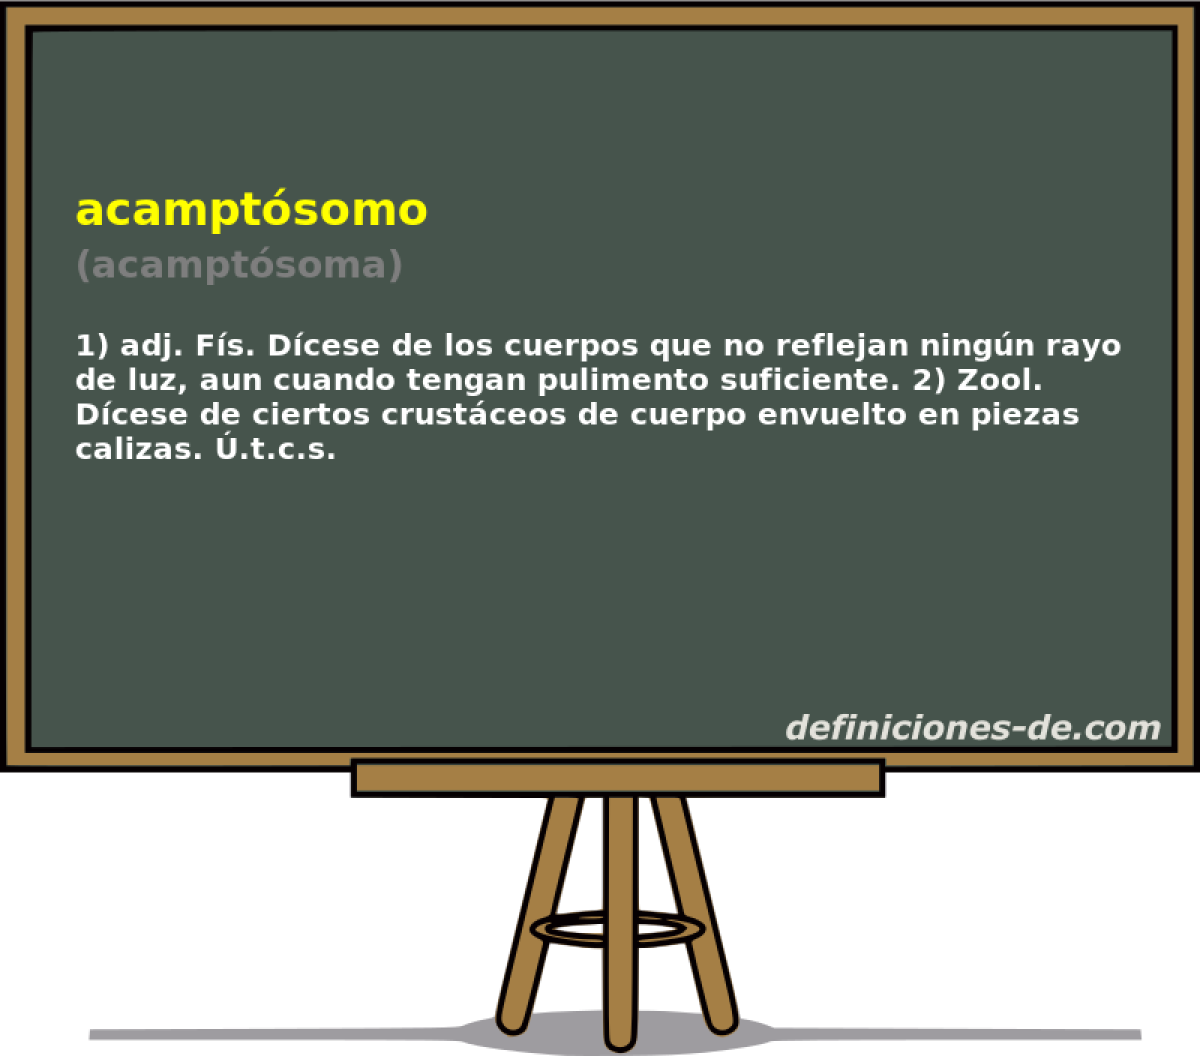 acamptsomo (acamptsoma)